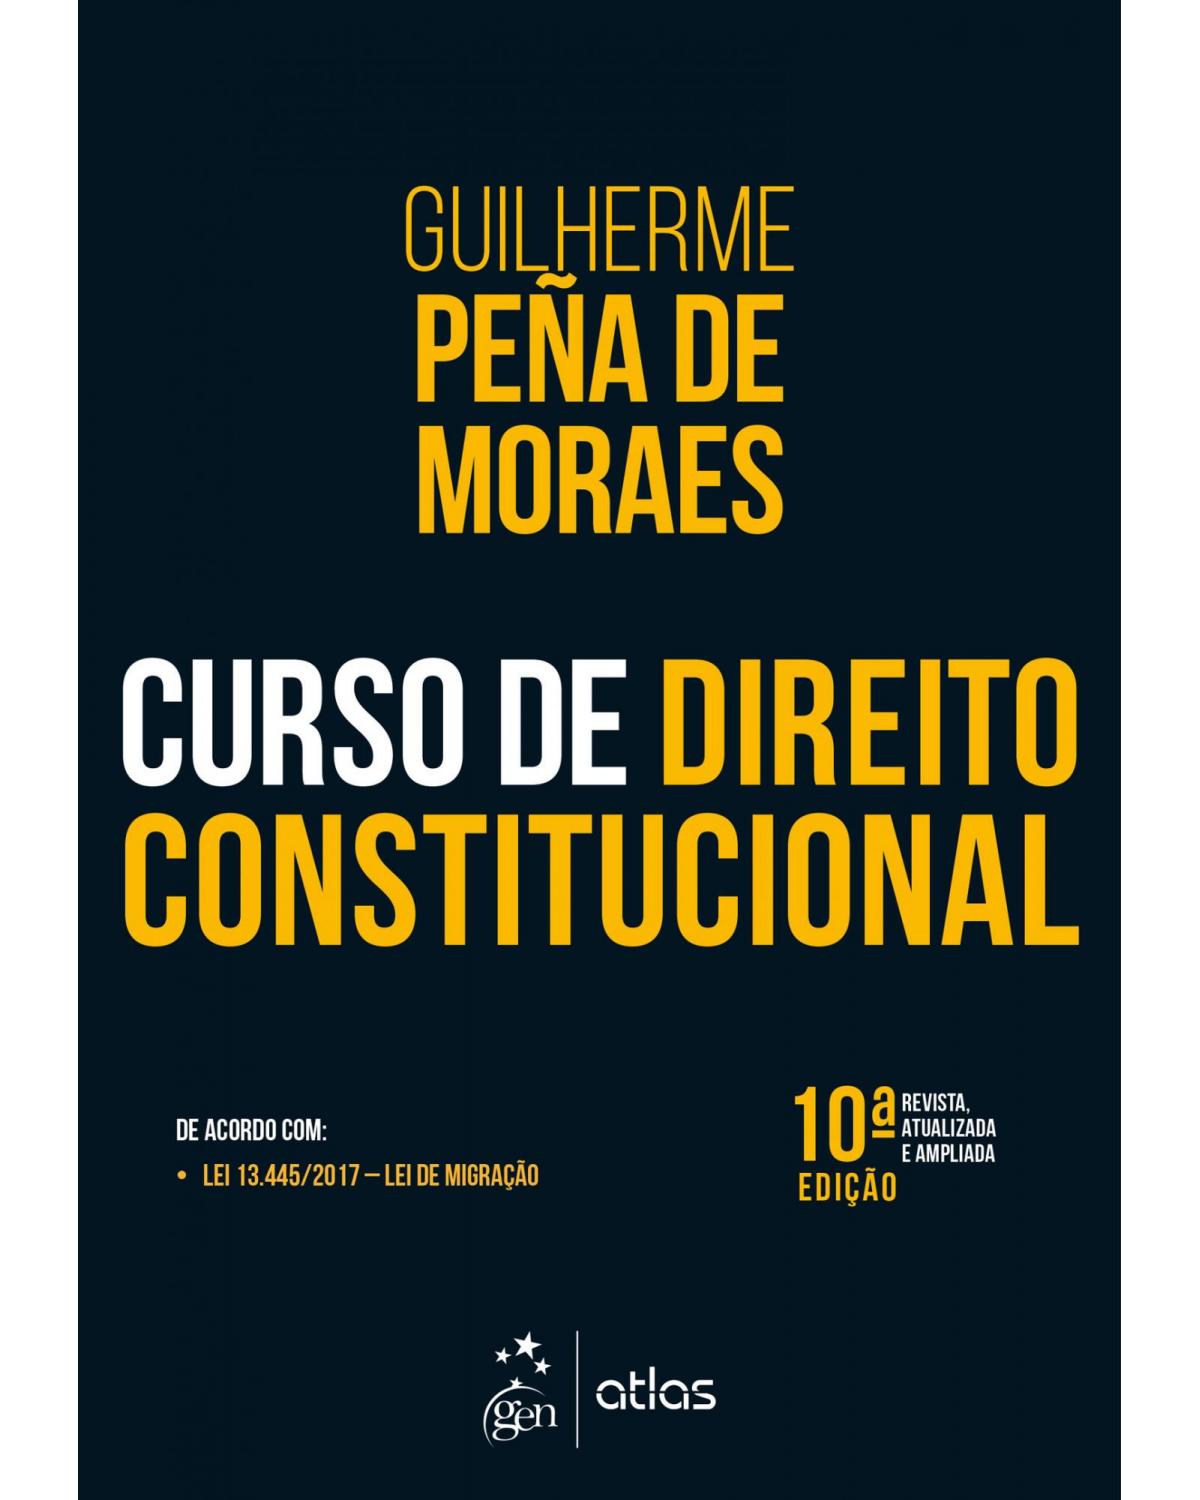 Curso de Direito Constitucional - 10ª Edição | 2018